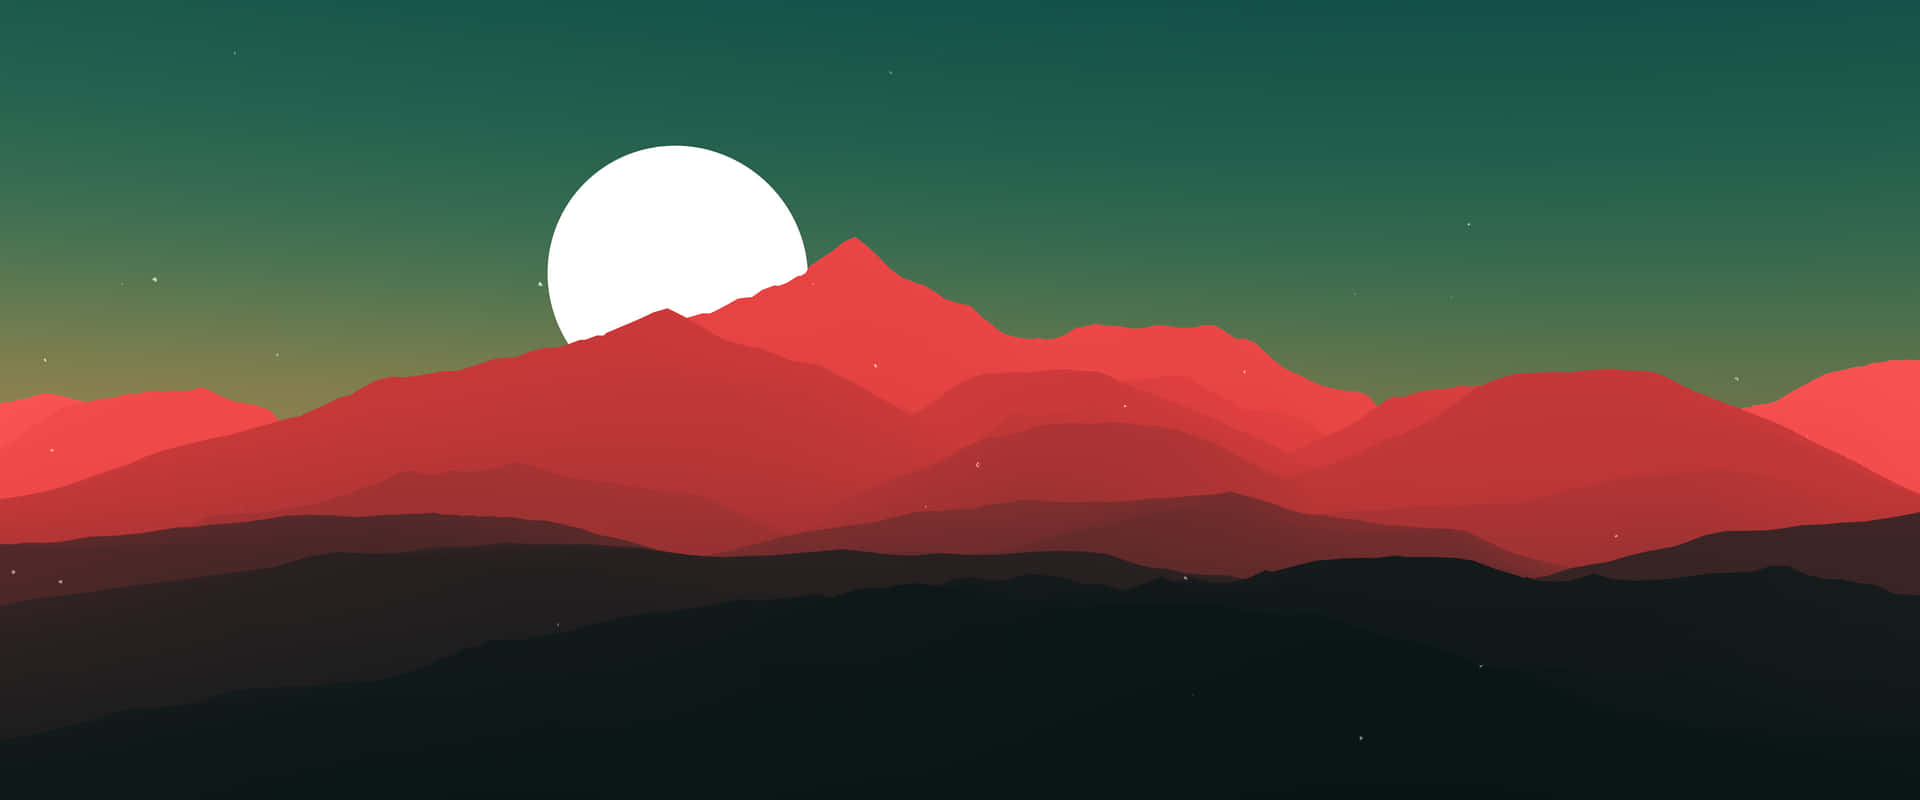 Einroter Und Grüner Berg Mit Einem Weißen Mond Wallpaper